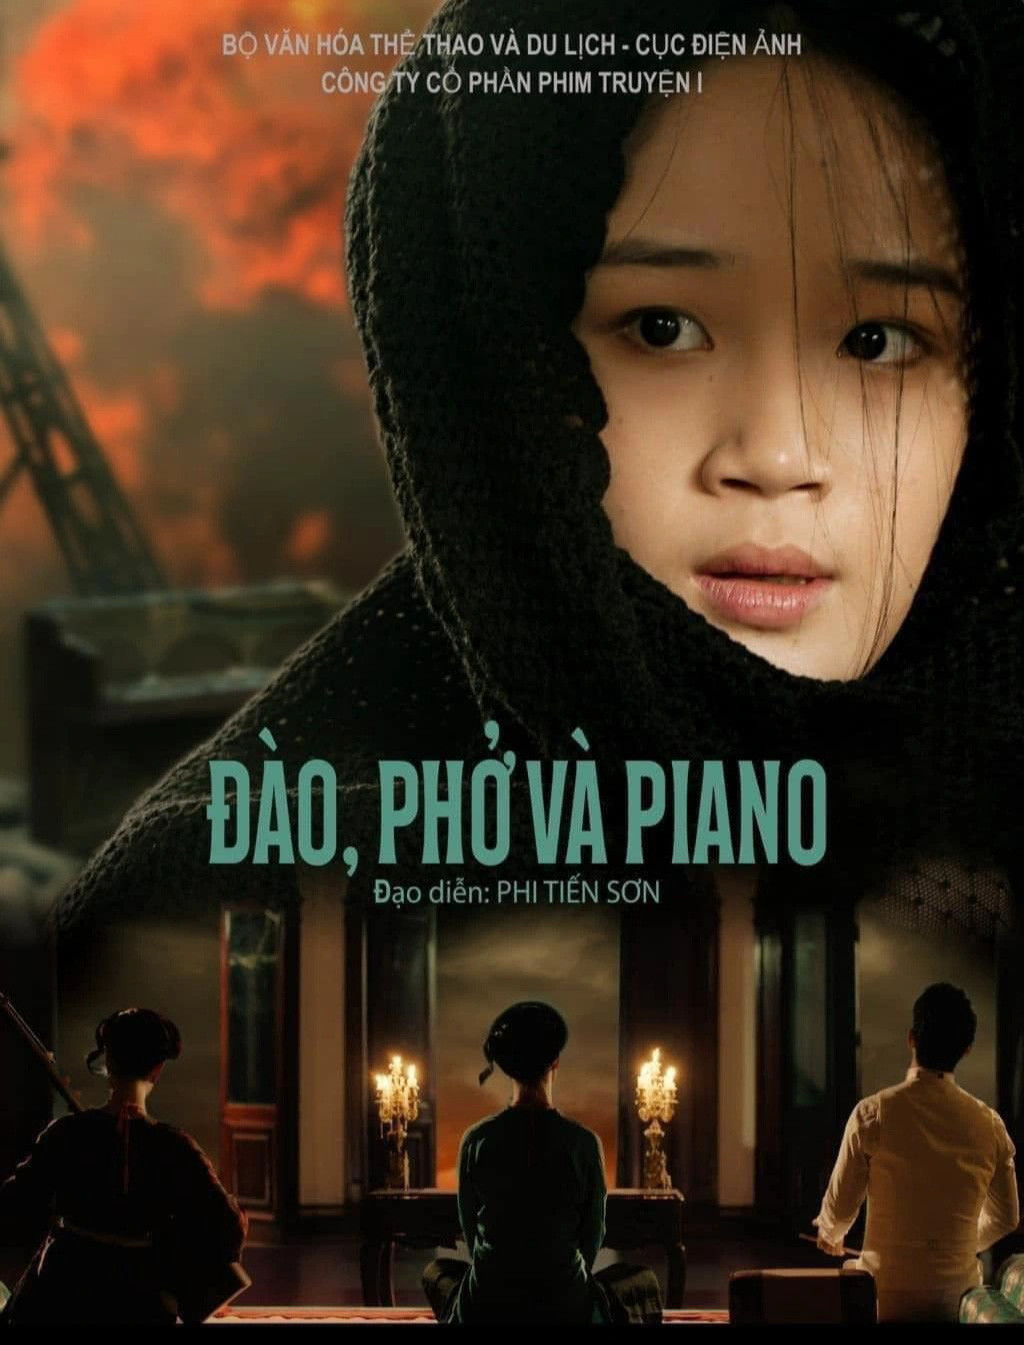 Poster phim Đào, phở và piano được chia sẻ liên tục trên các hội nhóm phim ảnh - Ảnh: ĐPCC